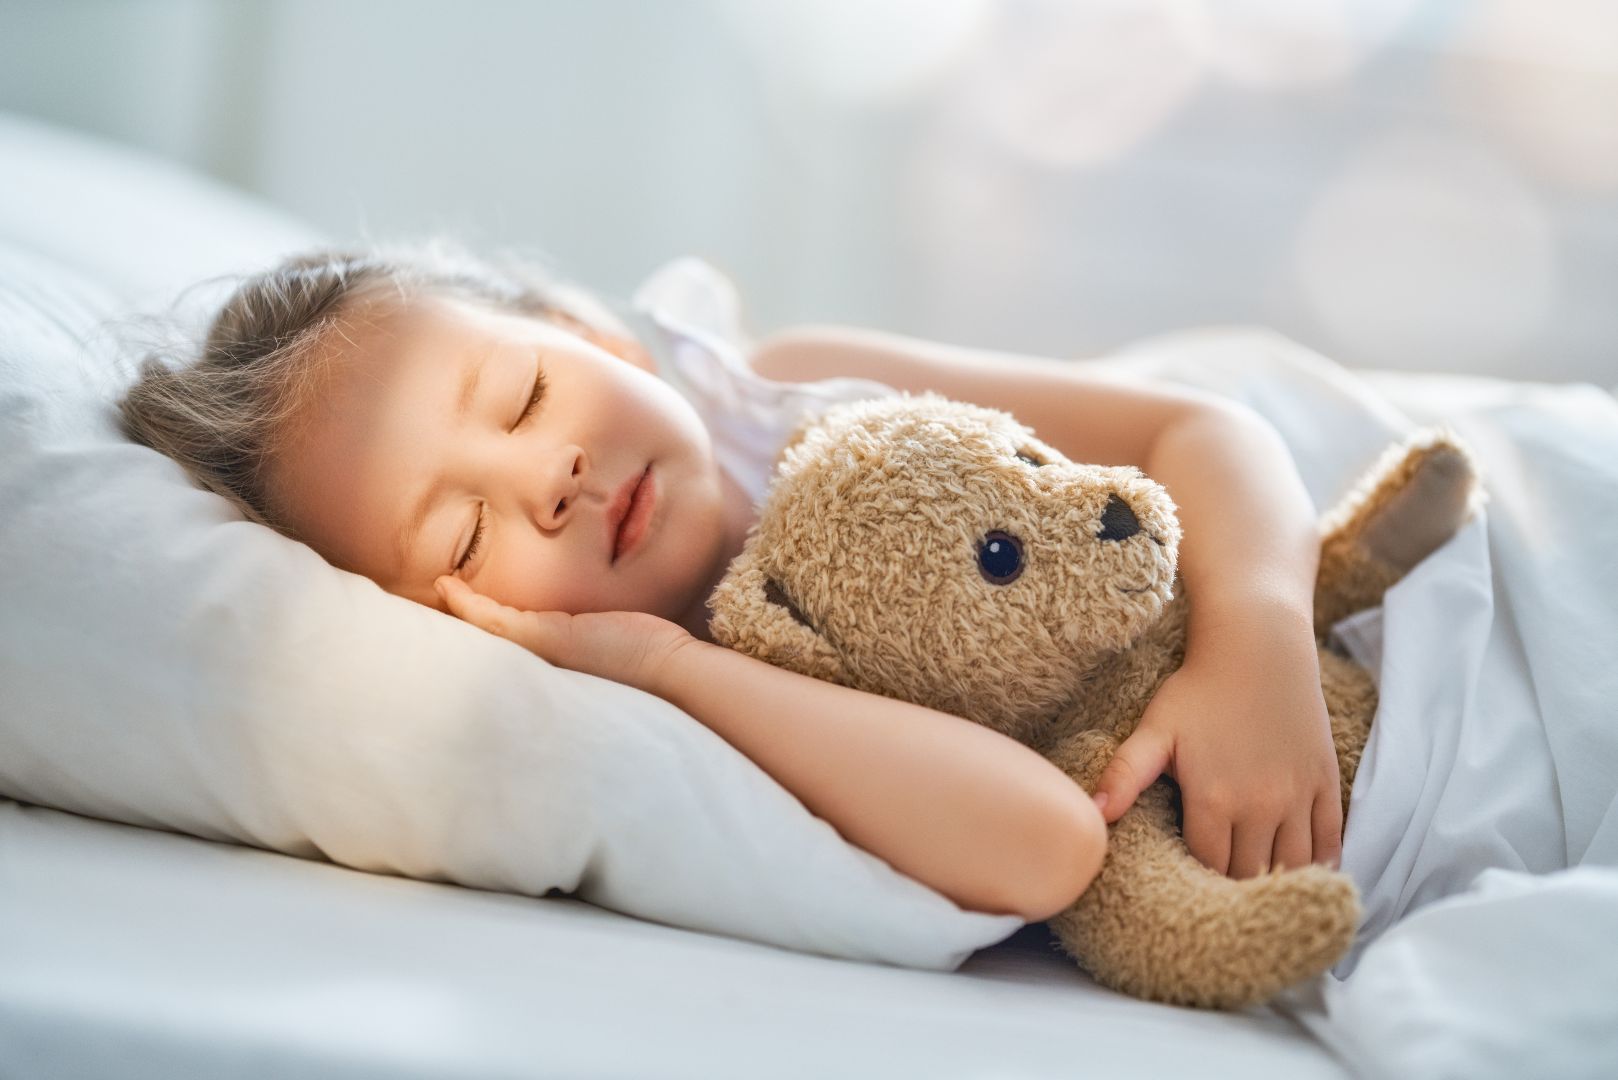 Girl asleep with teddy